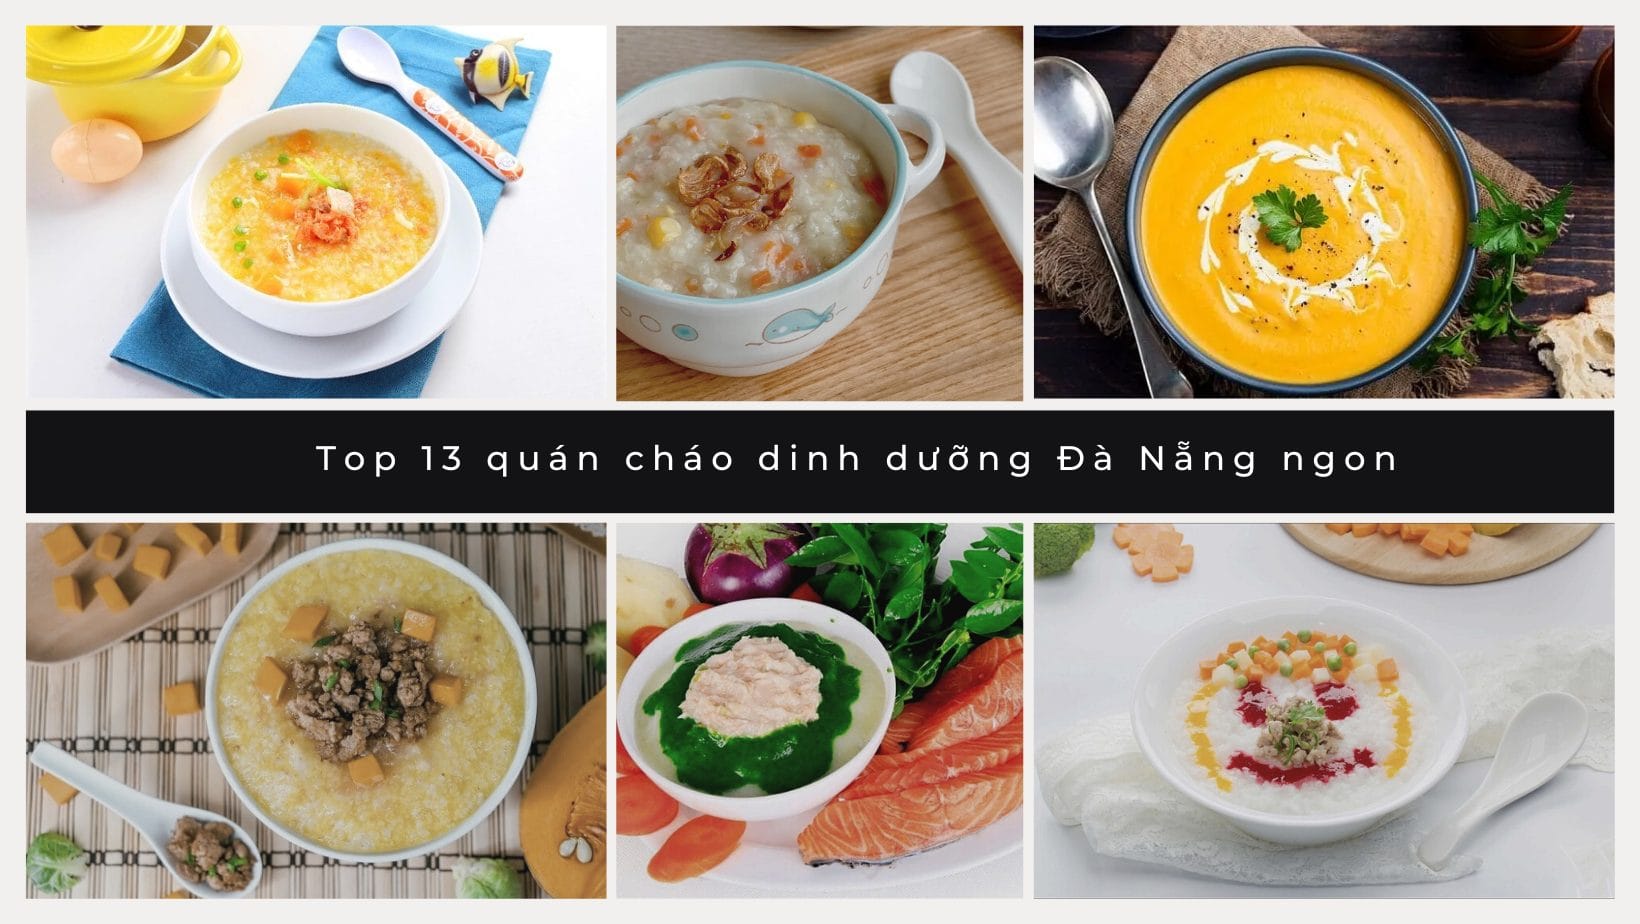 Top 13 quán cháo dinh dưỡng Đà Nẵng ngon và đảm bảo an toàn